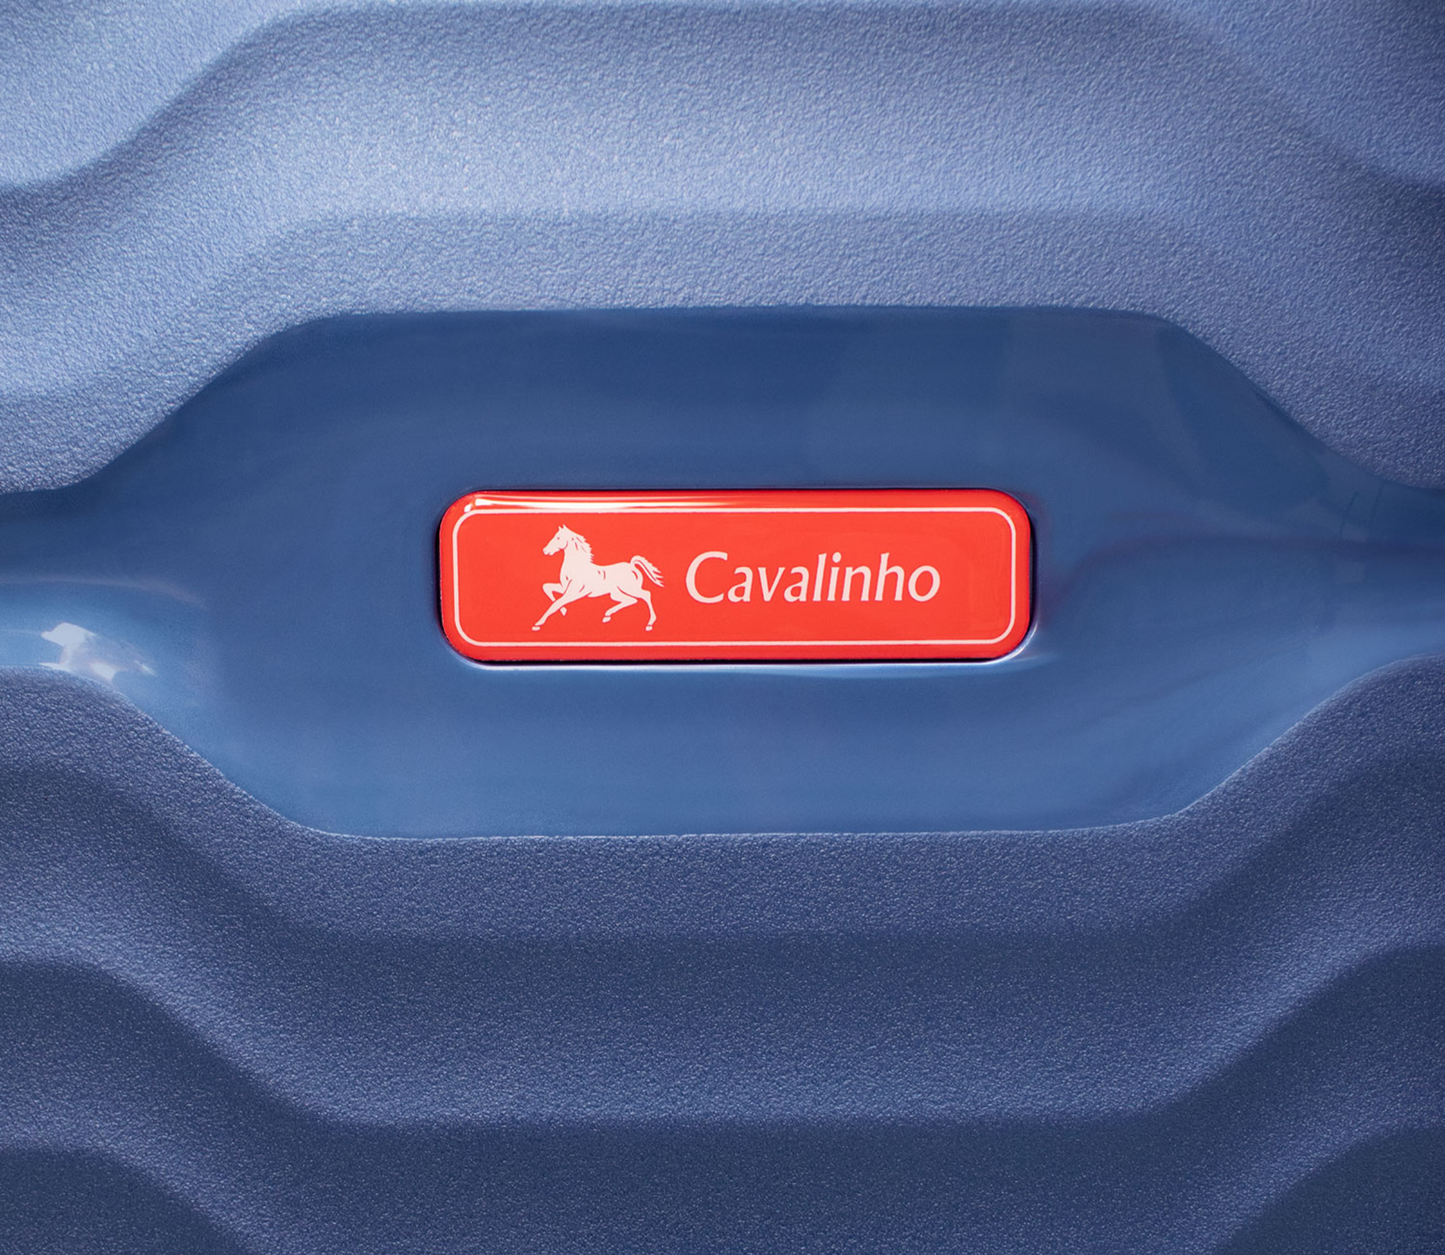 Cavalinho 3 Piece Hardside Luggage Set (14", 24" & 28") - 14 inch, 24 inch & 28 inch Set SteelBlue - 68010003.03.24_5S_3c57b977-a9cf-449f-b9f6-69453976f9f7